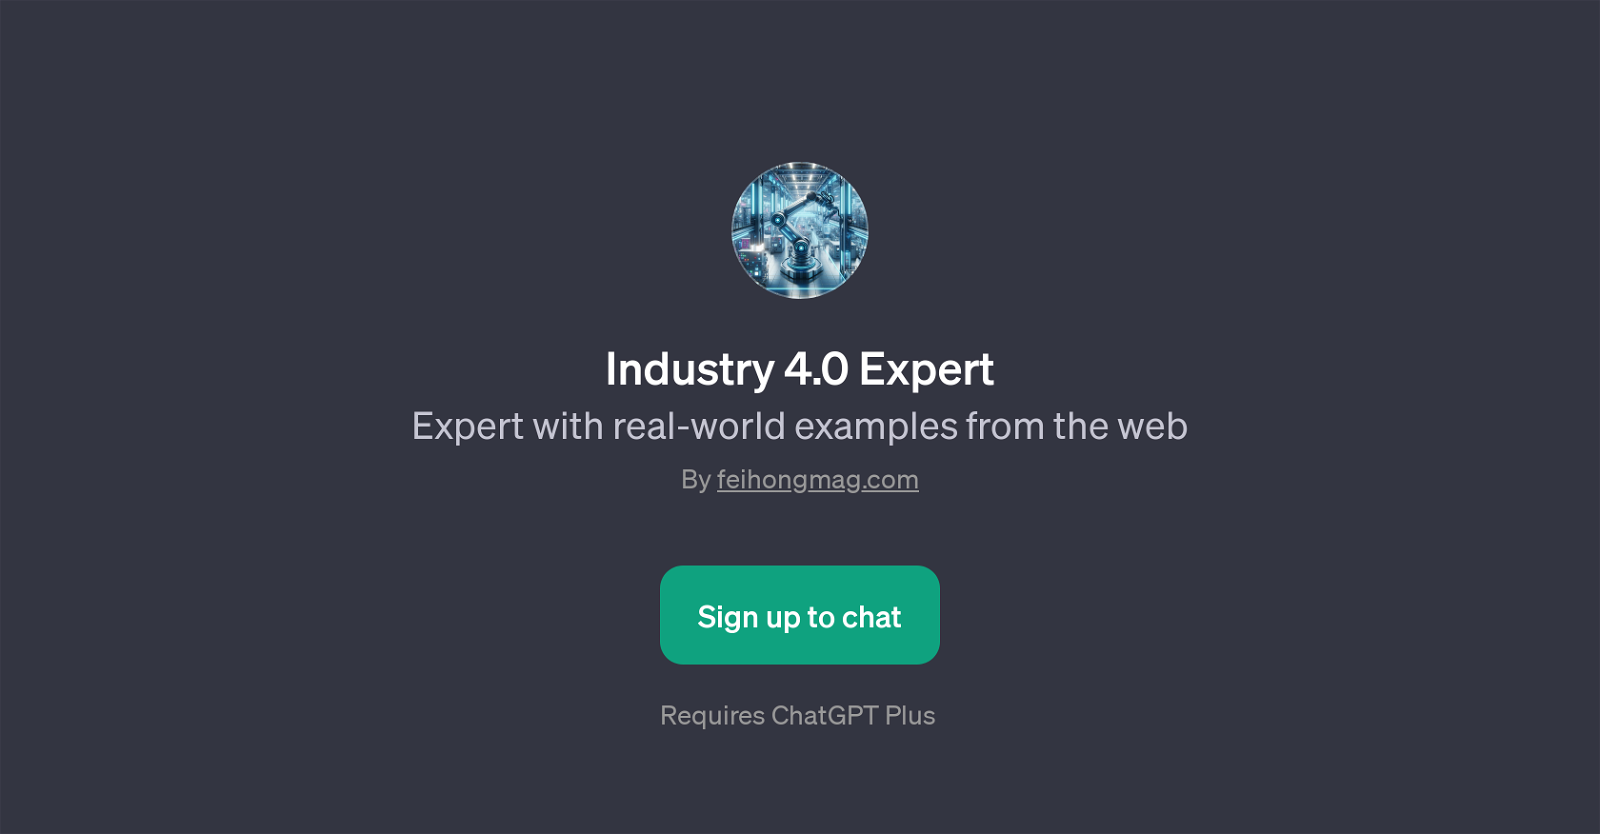 Industry 4.0 Expert website